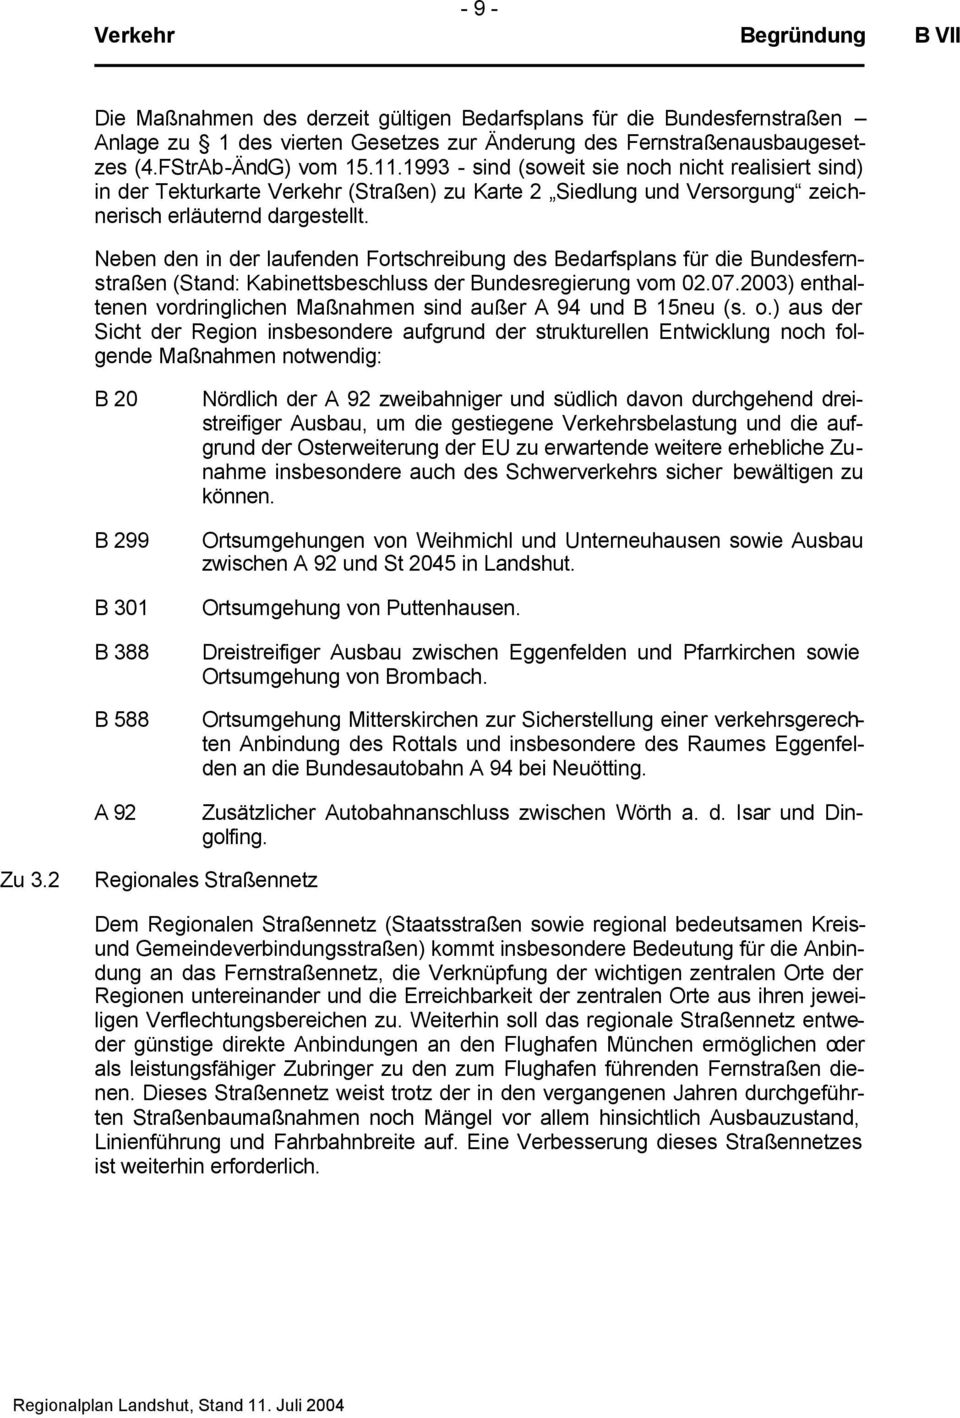 Neben den in der laufenden Fortschreibung des Bedarfsplans für die Bundesfernstraßen (Stand: Kabinettsbeschluss der Bundesregierung vom 02.07.